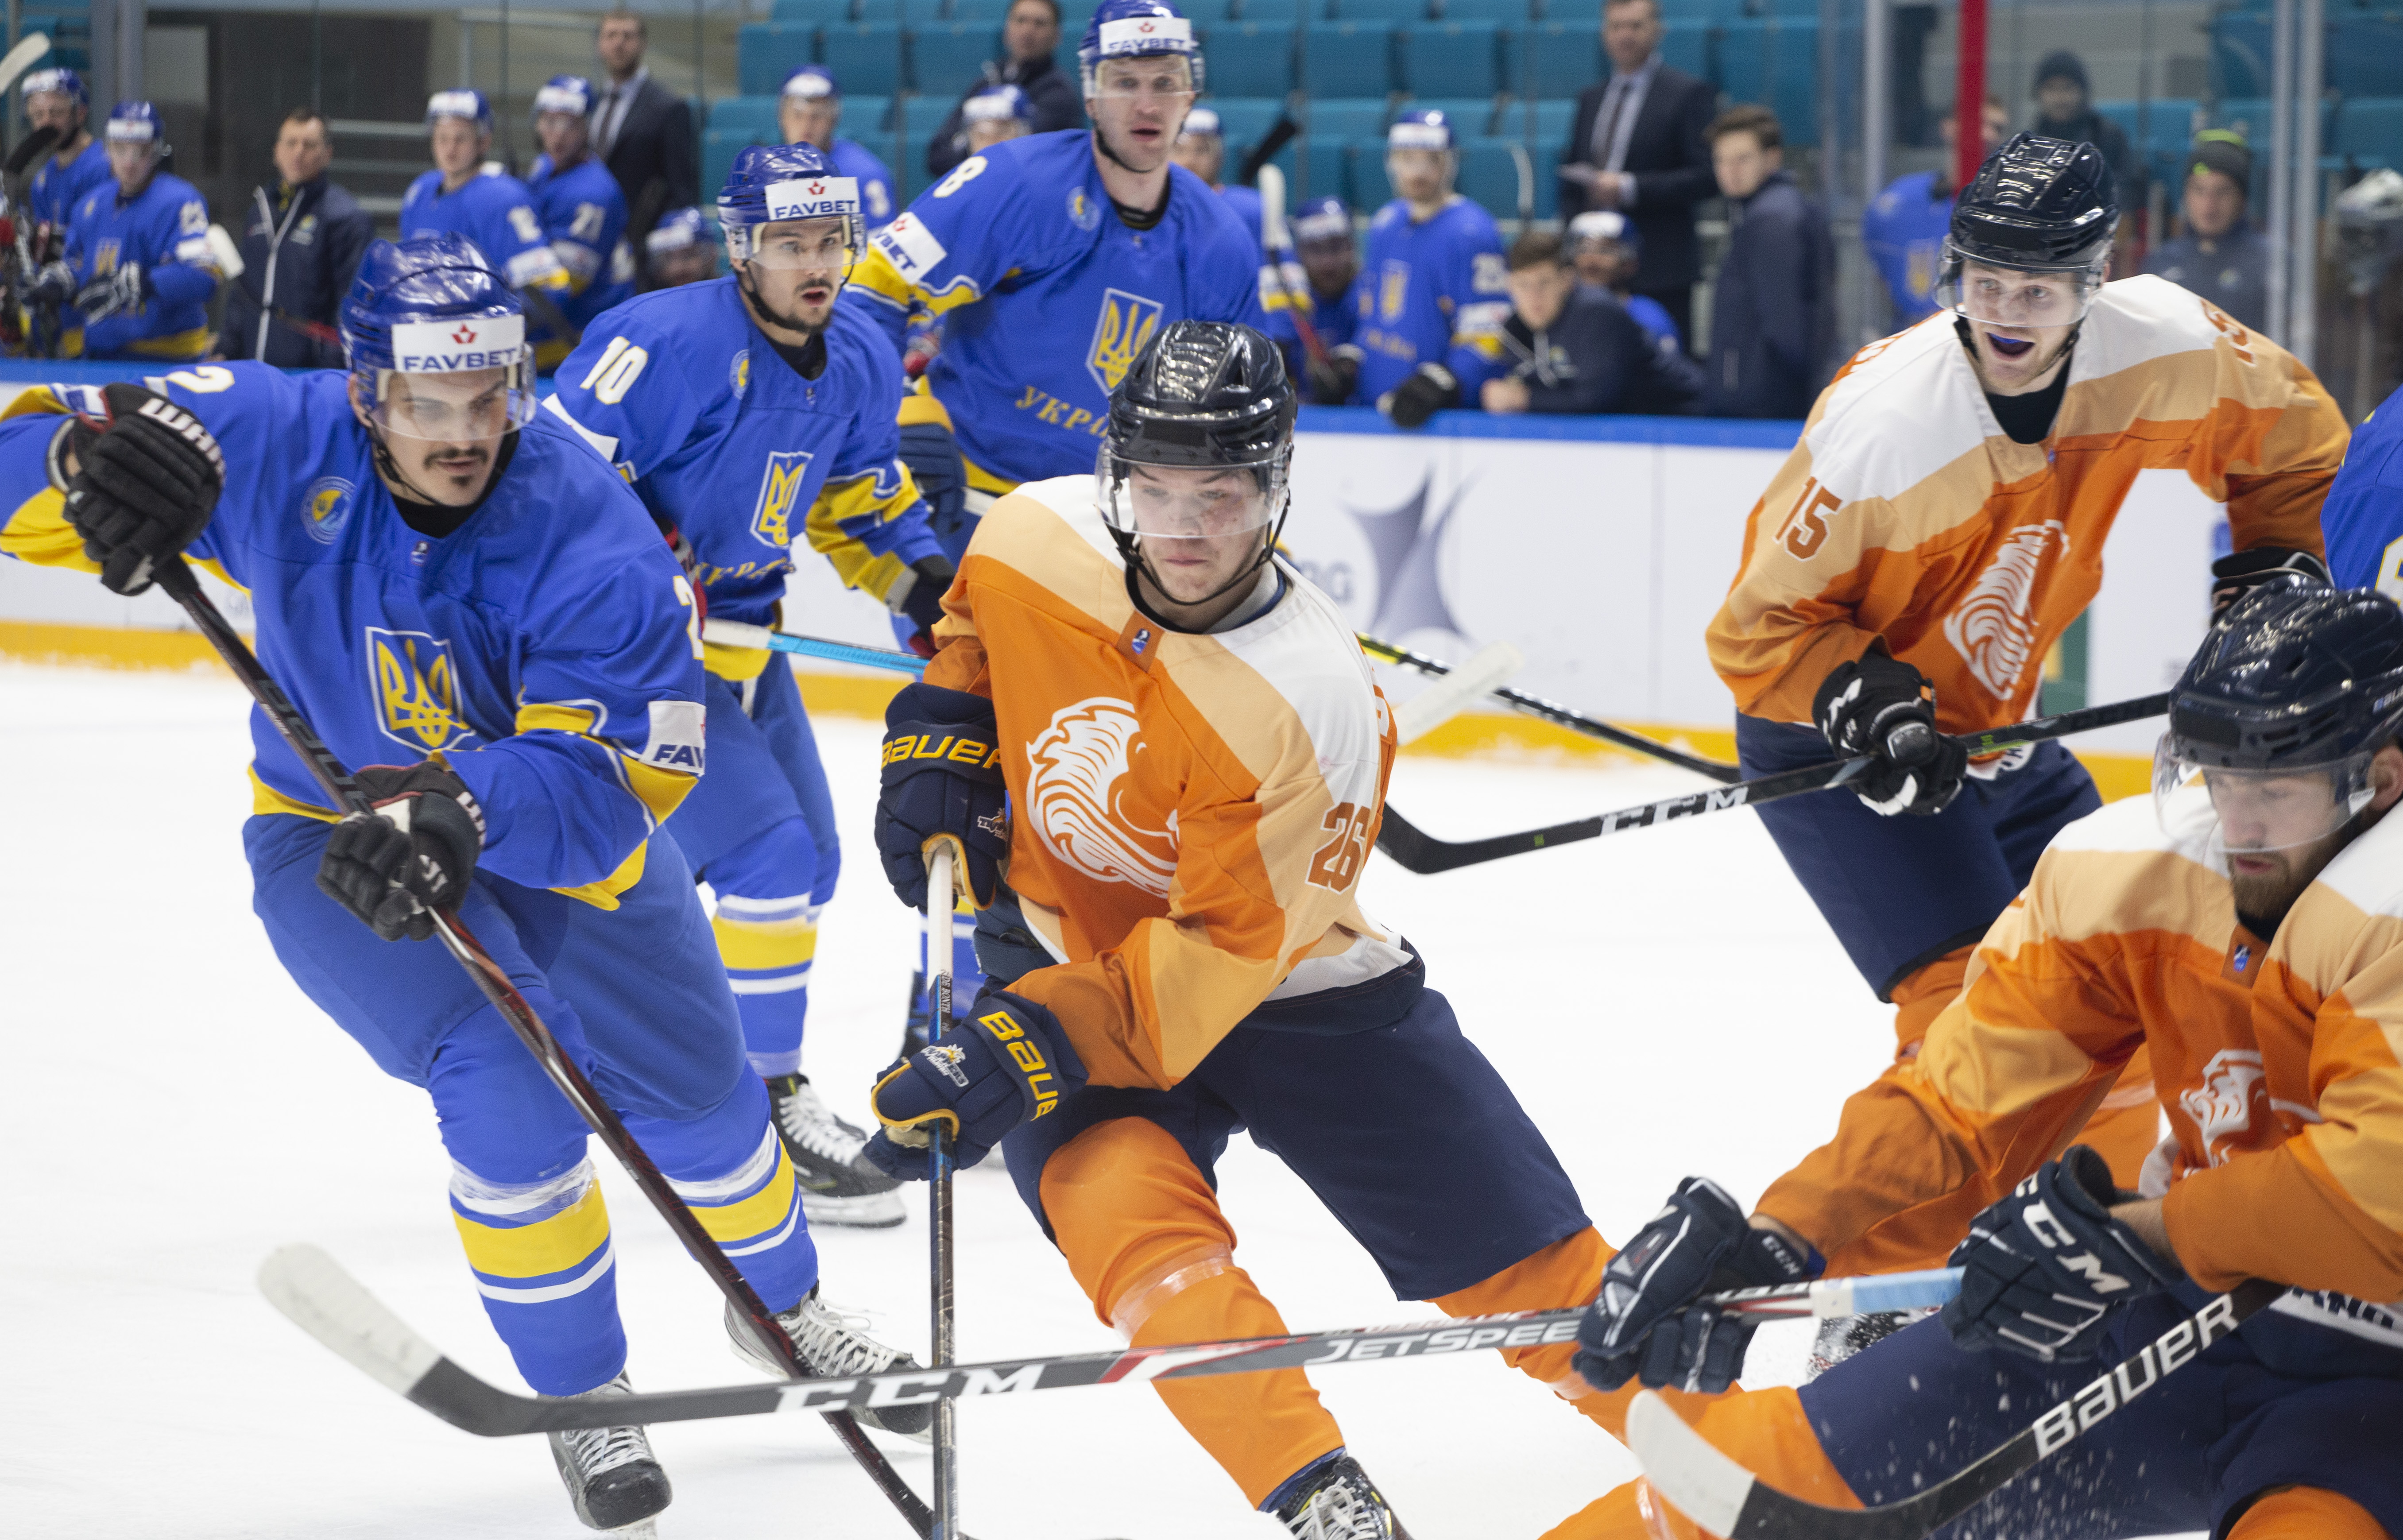 IIHF - Gallery: Netherlands vs. Ukraine - 2020 Men's Olympic